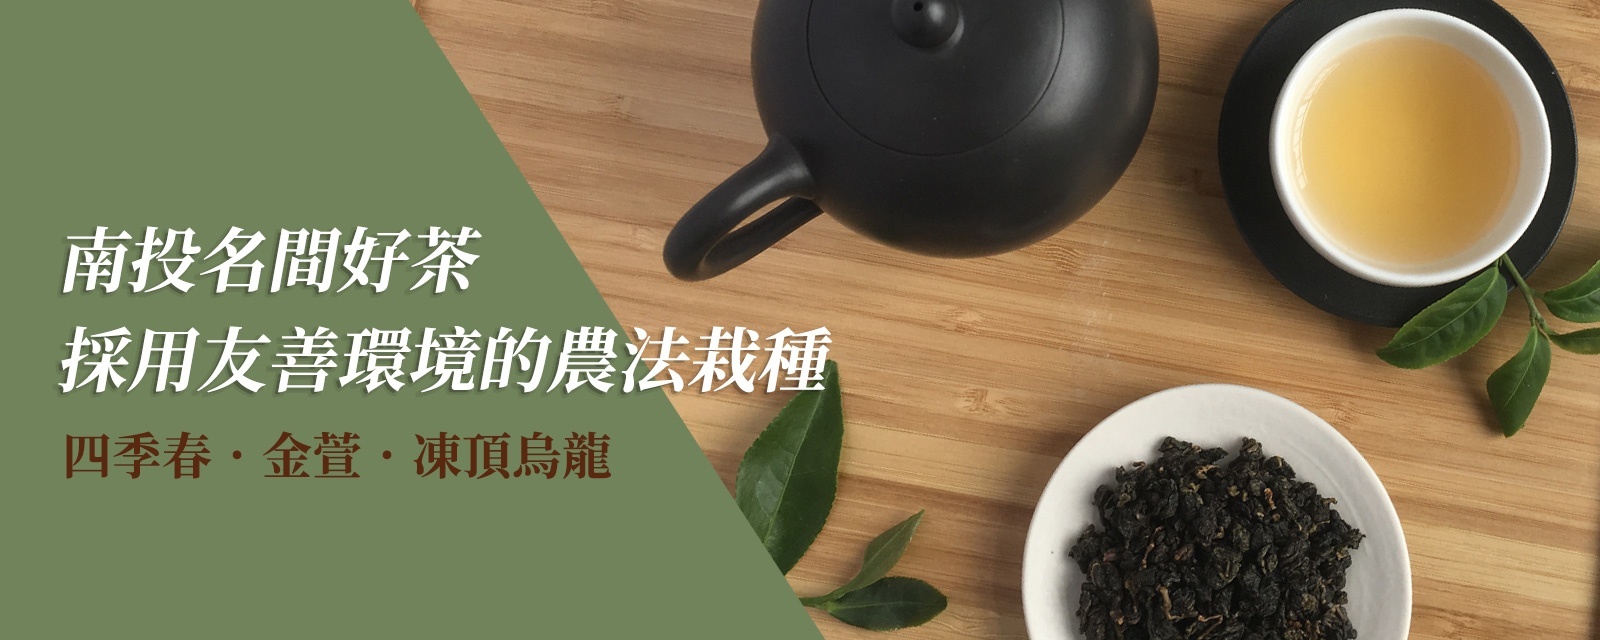 自然農法台灣茶